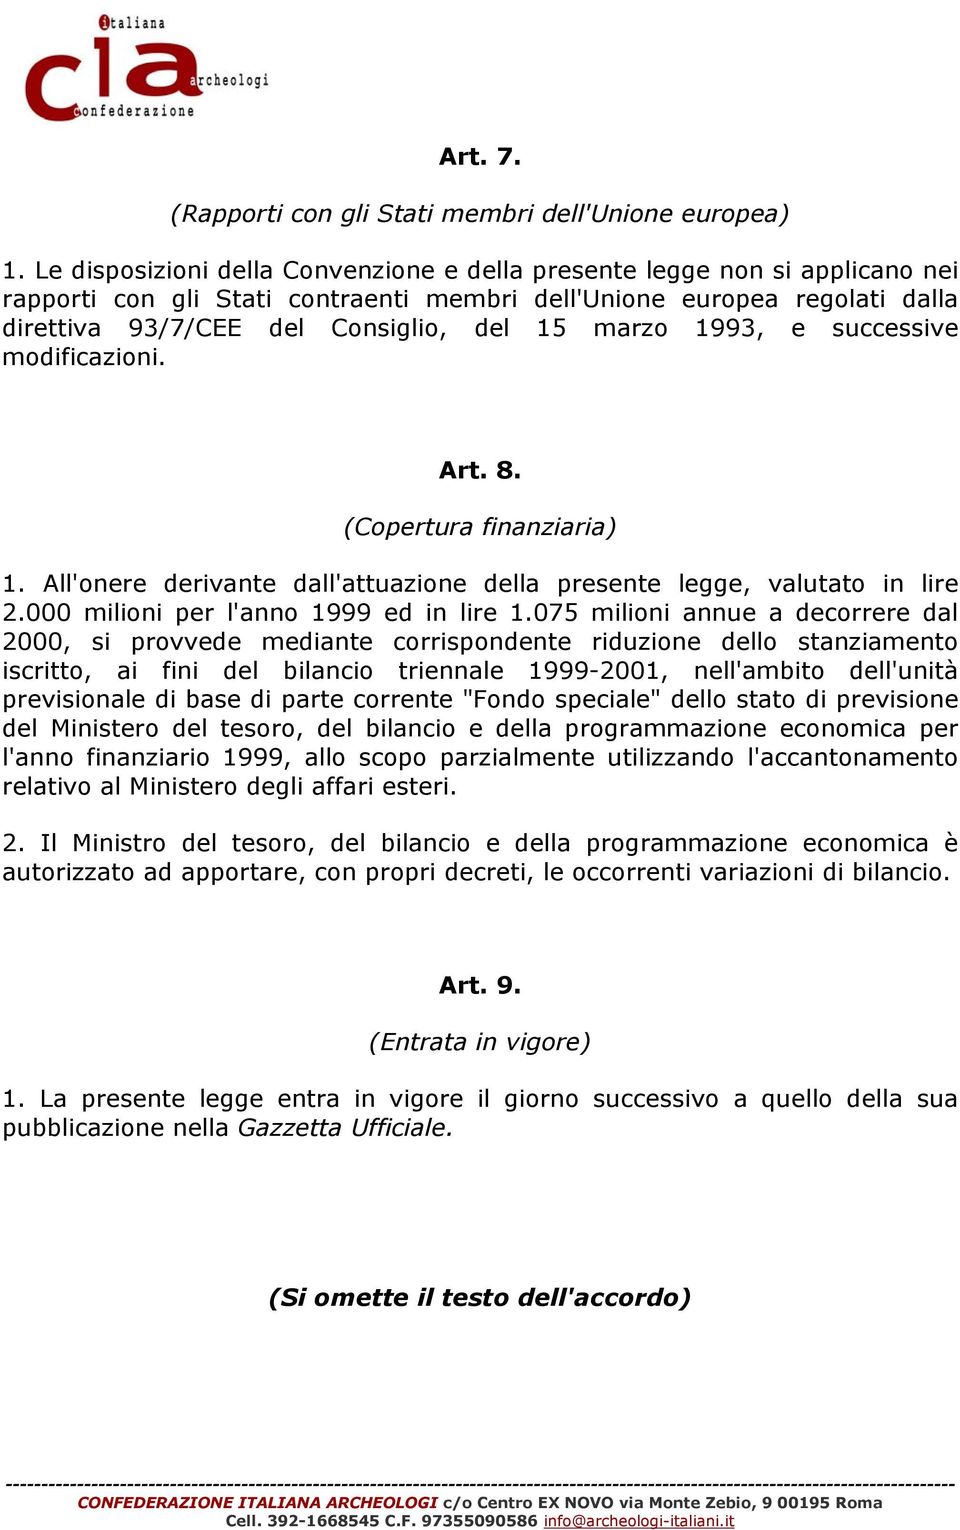 marzo 1993, e successive modificazioni. Art. 8. (Copertura finanziaria) 1. All'onere derivante dall'attuazione della presente legge, valutato in lire 2.000 milioni per l'anno 1999 ed in lire 1.